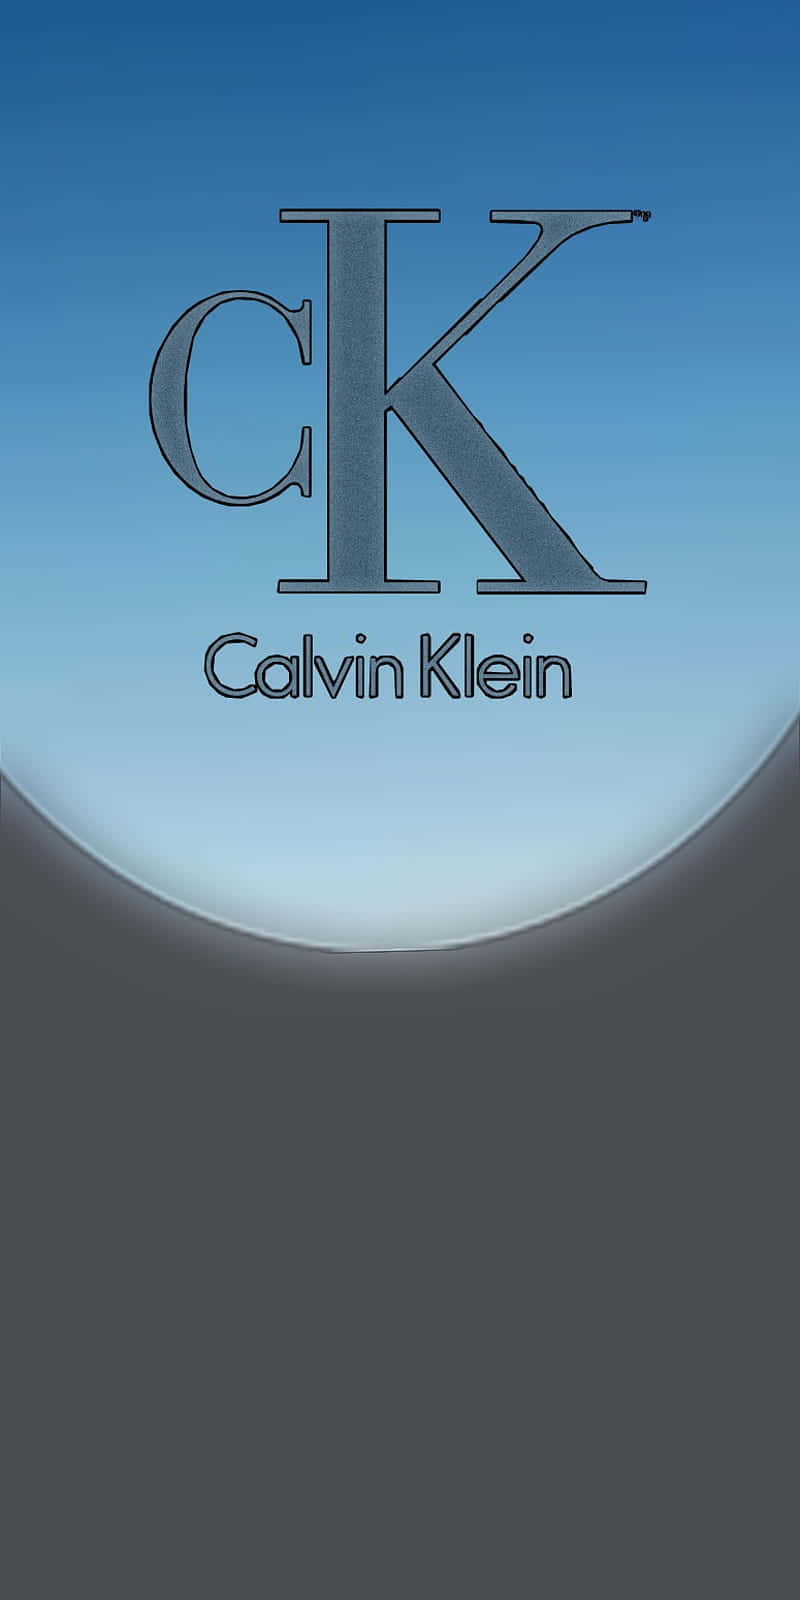 Zeigensie Ihre Kühne Und Stilvolle Seite In Calvin Klein